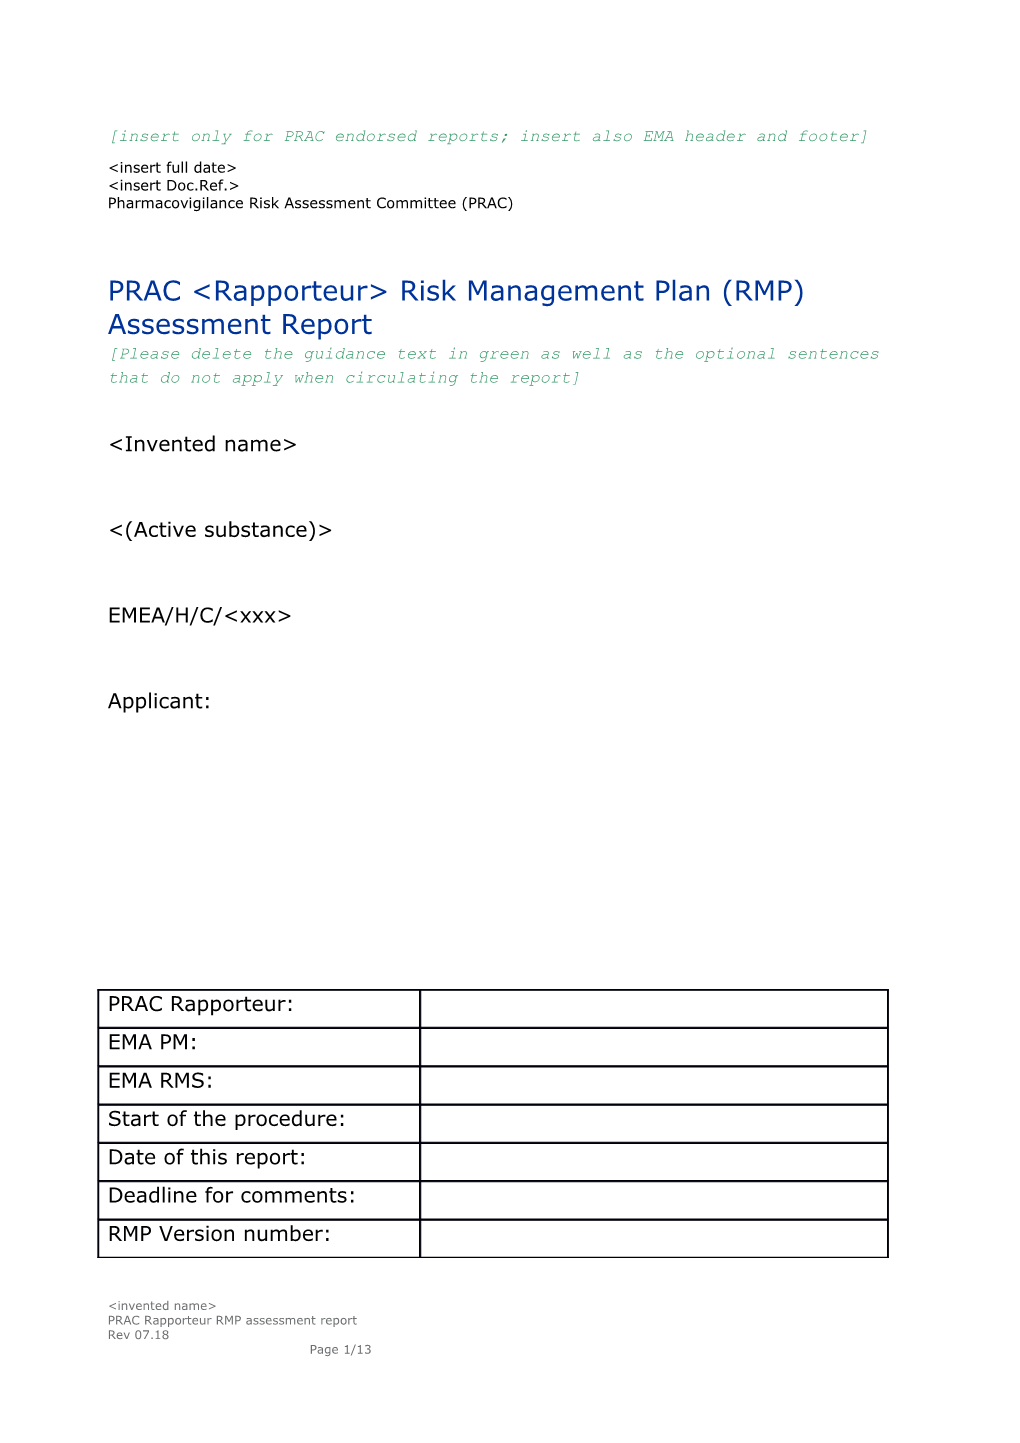 D94 PRAC Rapporteur RMP Assessment Report Template Rev 07.18